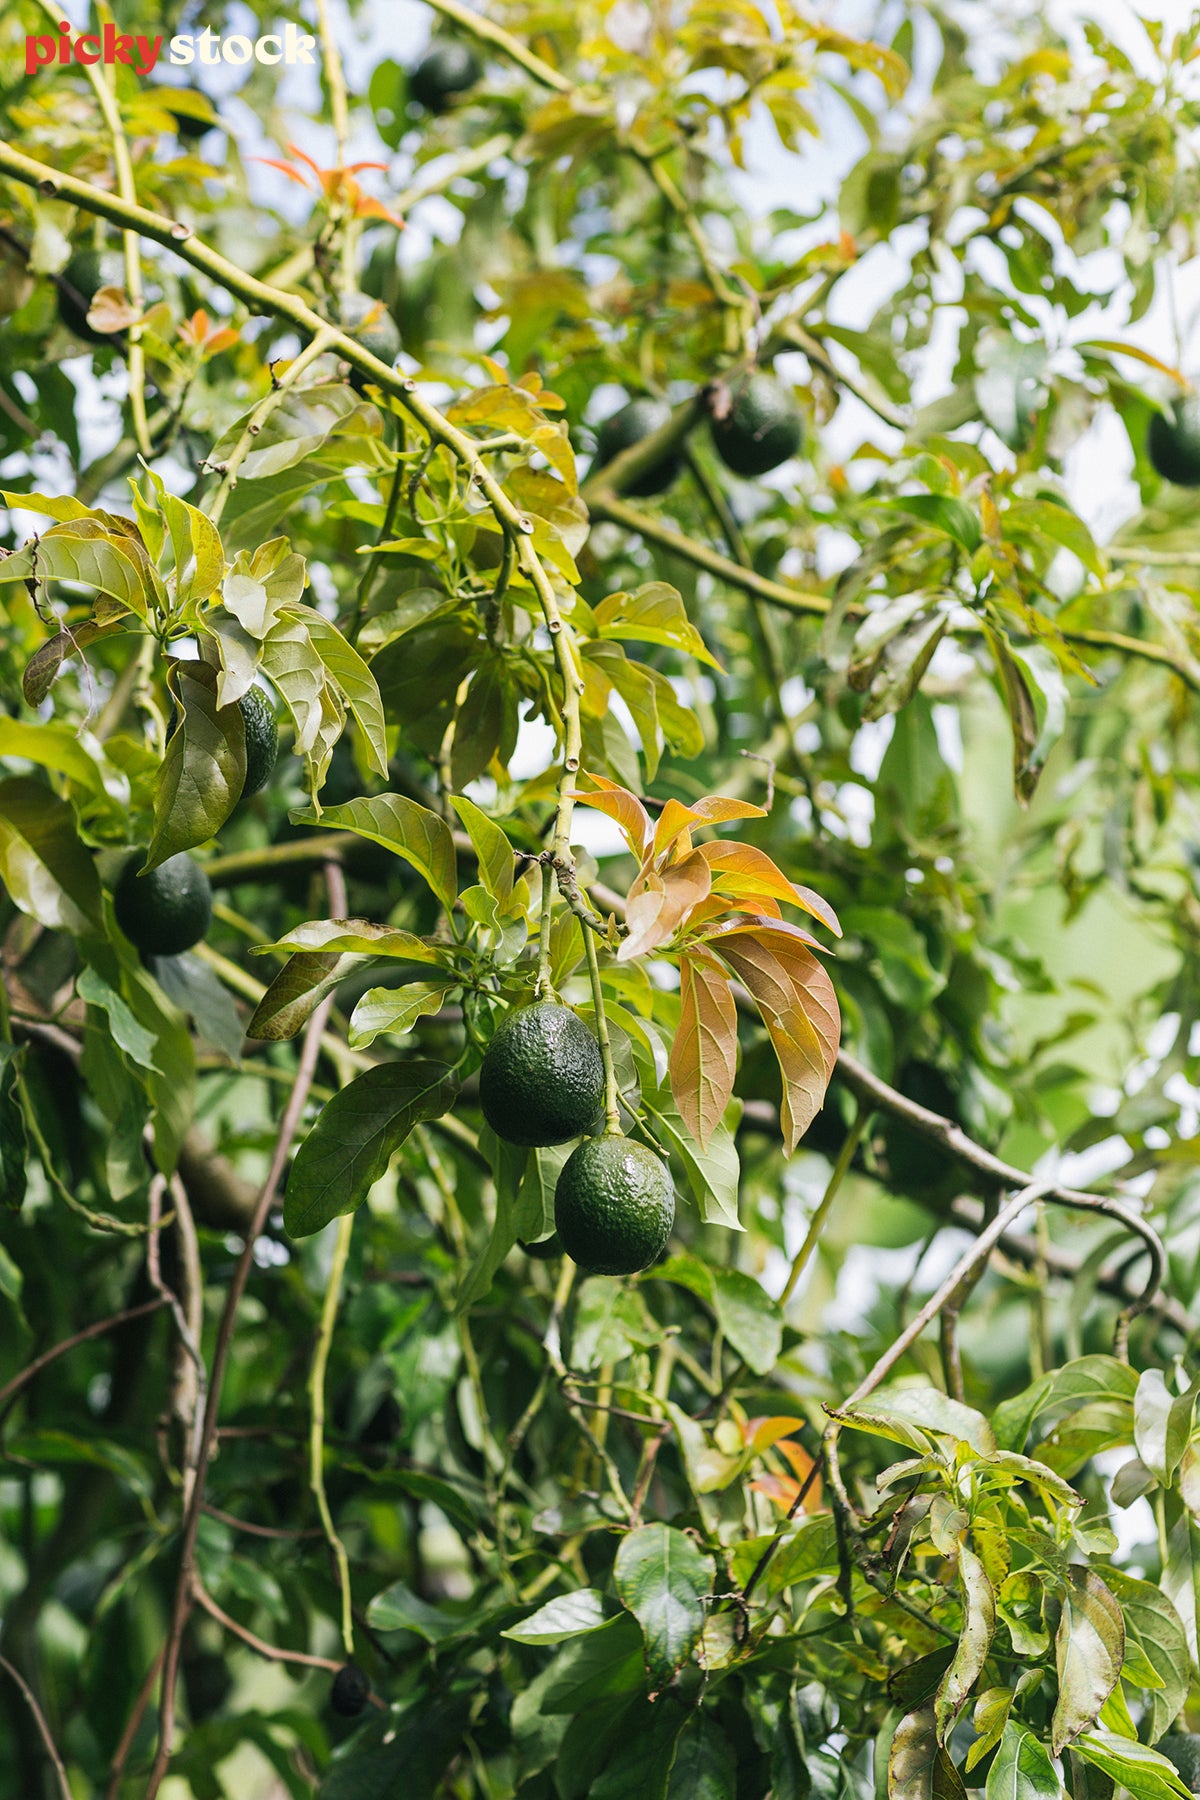 Small green avocados grow on an avocado tree. 